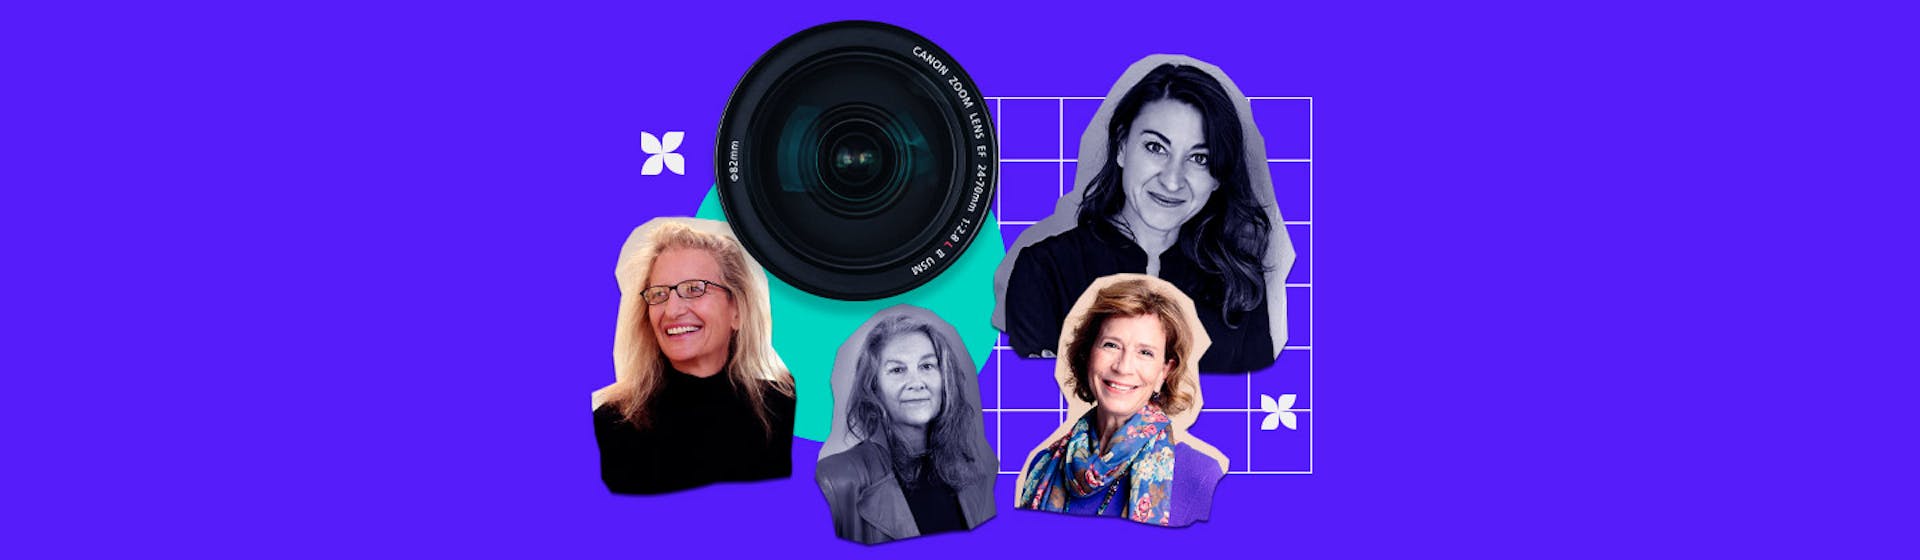 15 fotógrafas famosas que han inspirado al mundo desde una perspectiva femenina